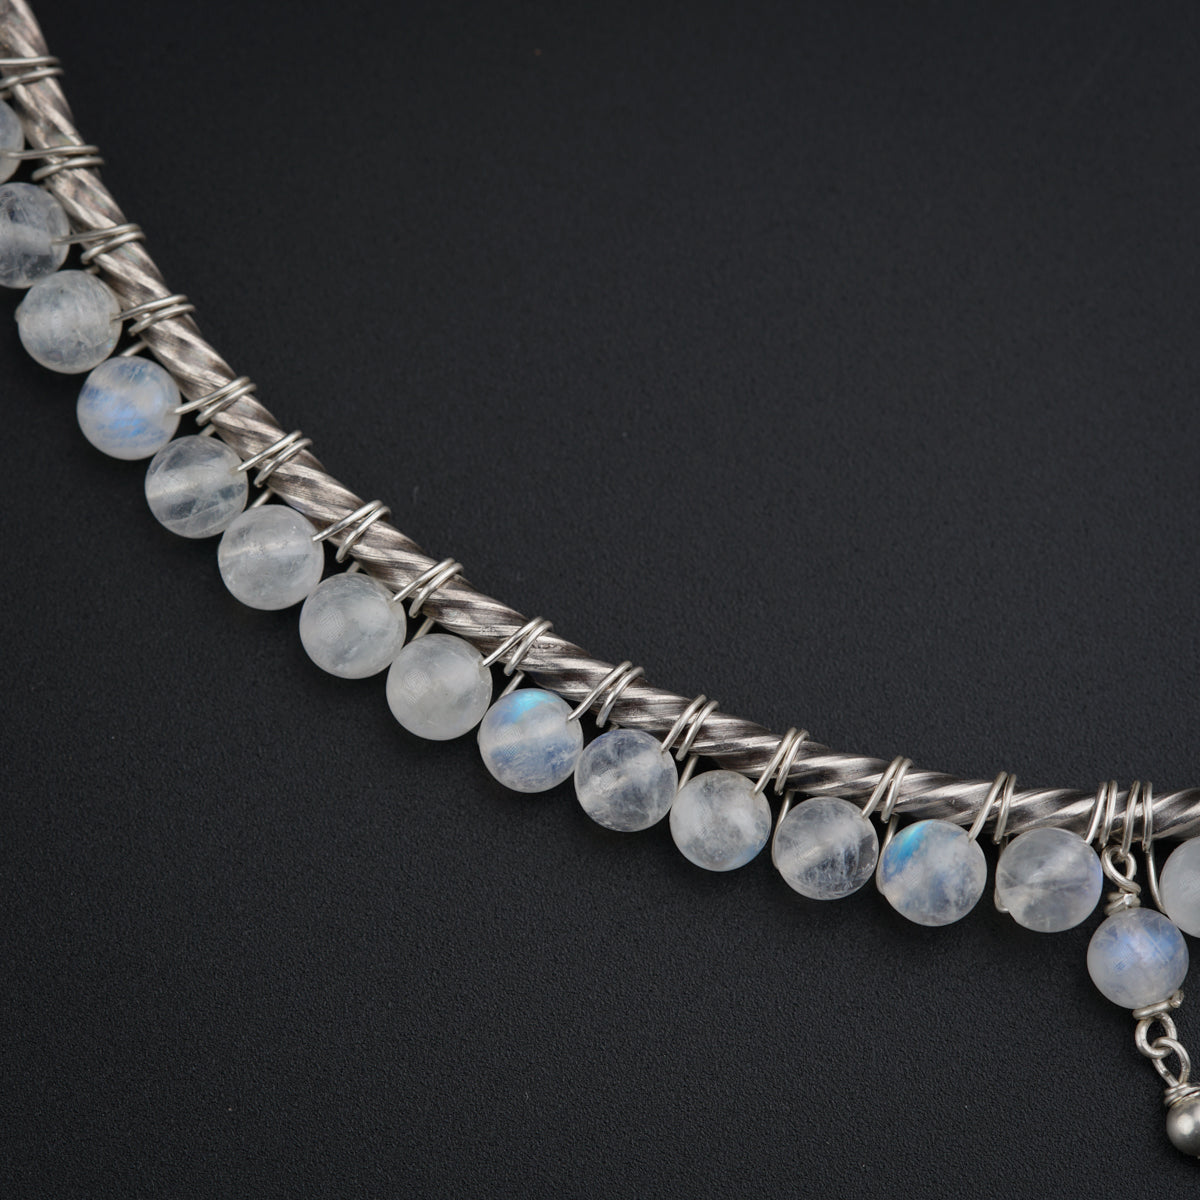 Silver Dew Drops collar necklace